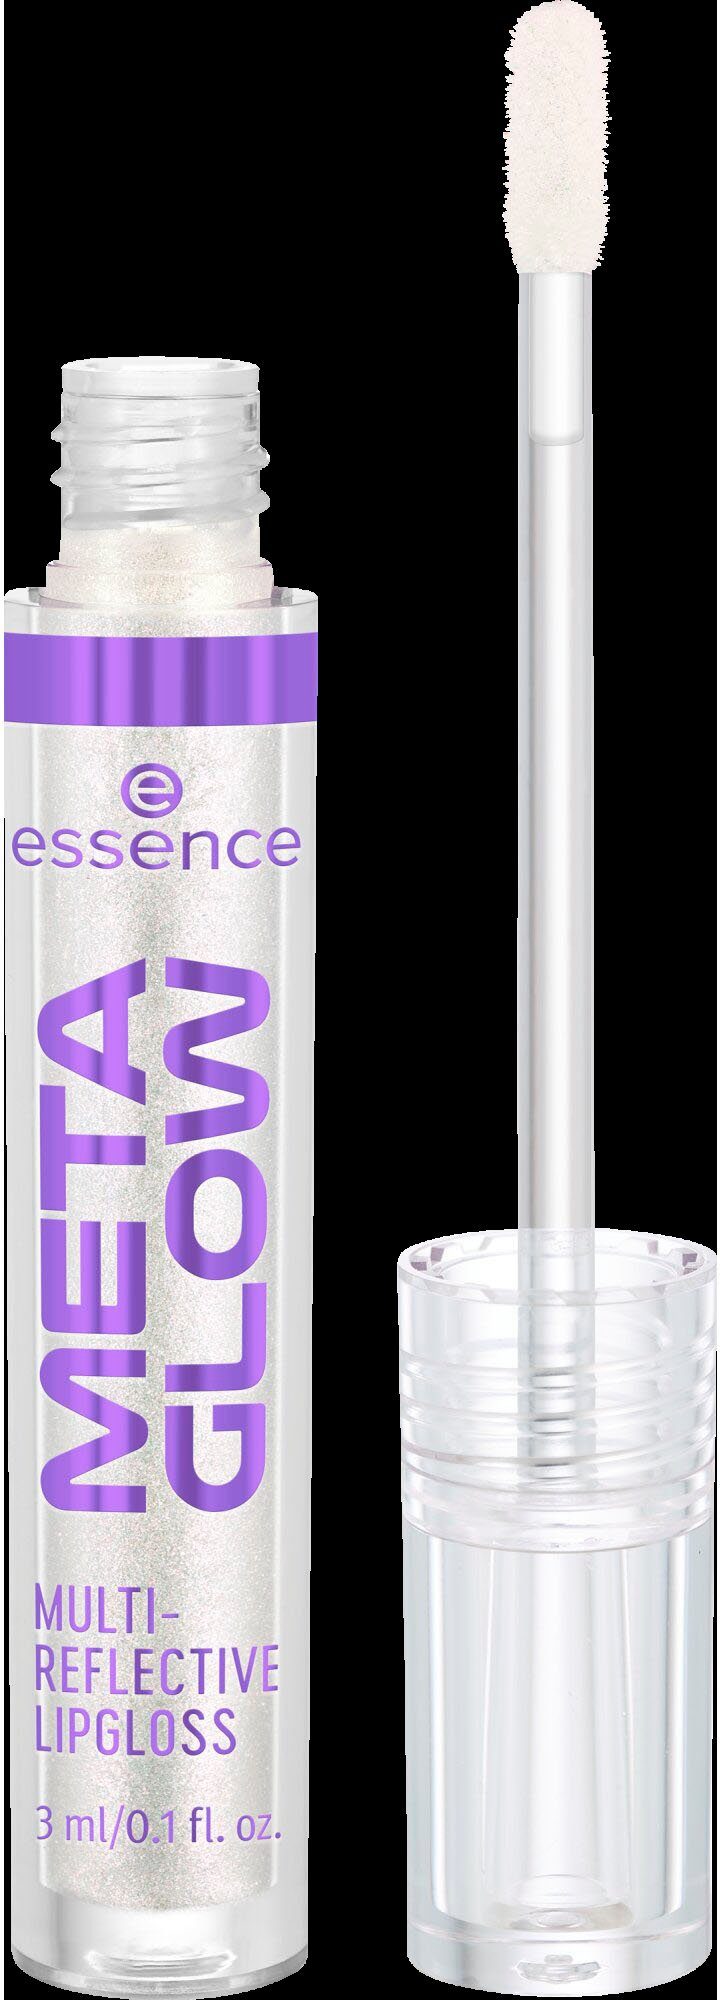 Essence Lipgloss META GLOW MULTI-REFLECTIVE als Alleine tragbar oder über perfekt Topper LIPGLOSS, Lieblingslippenstift deinem